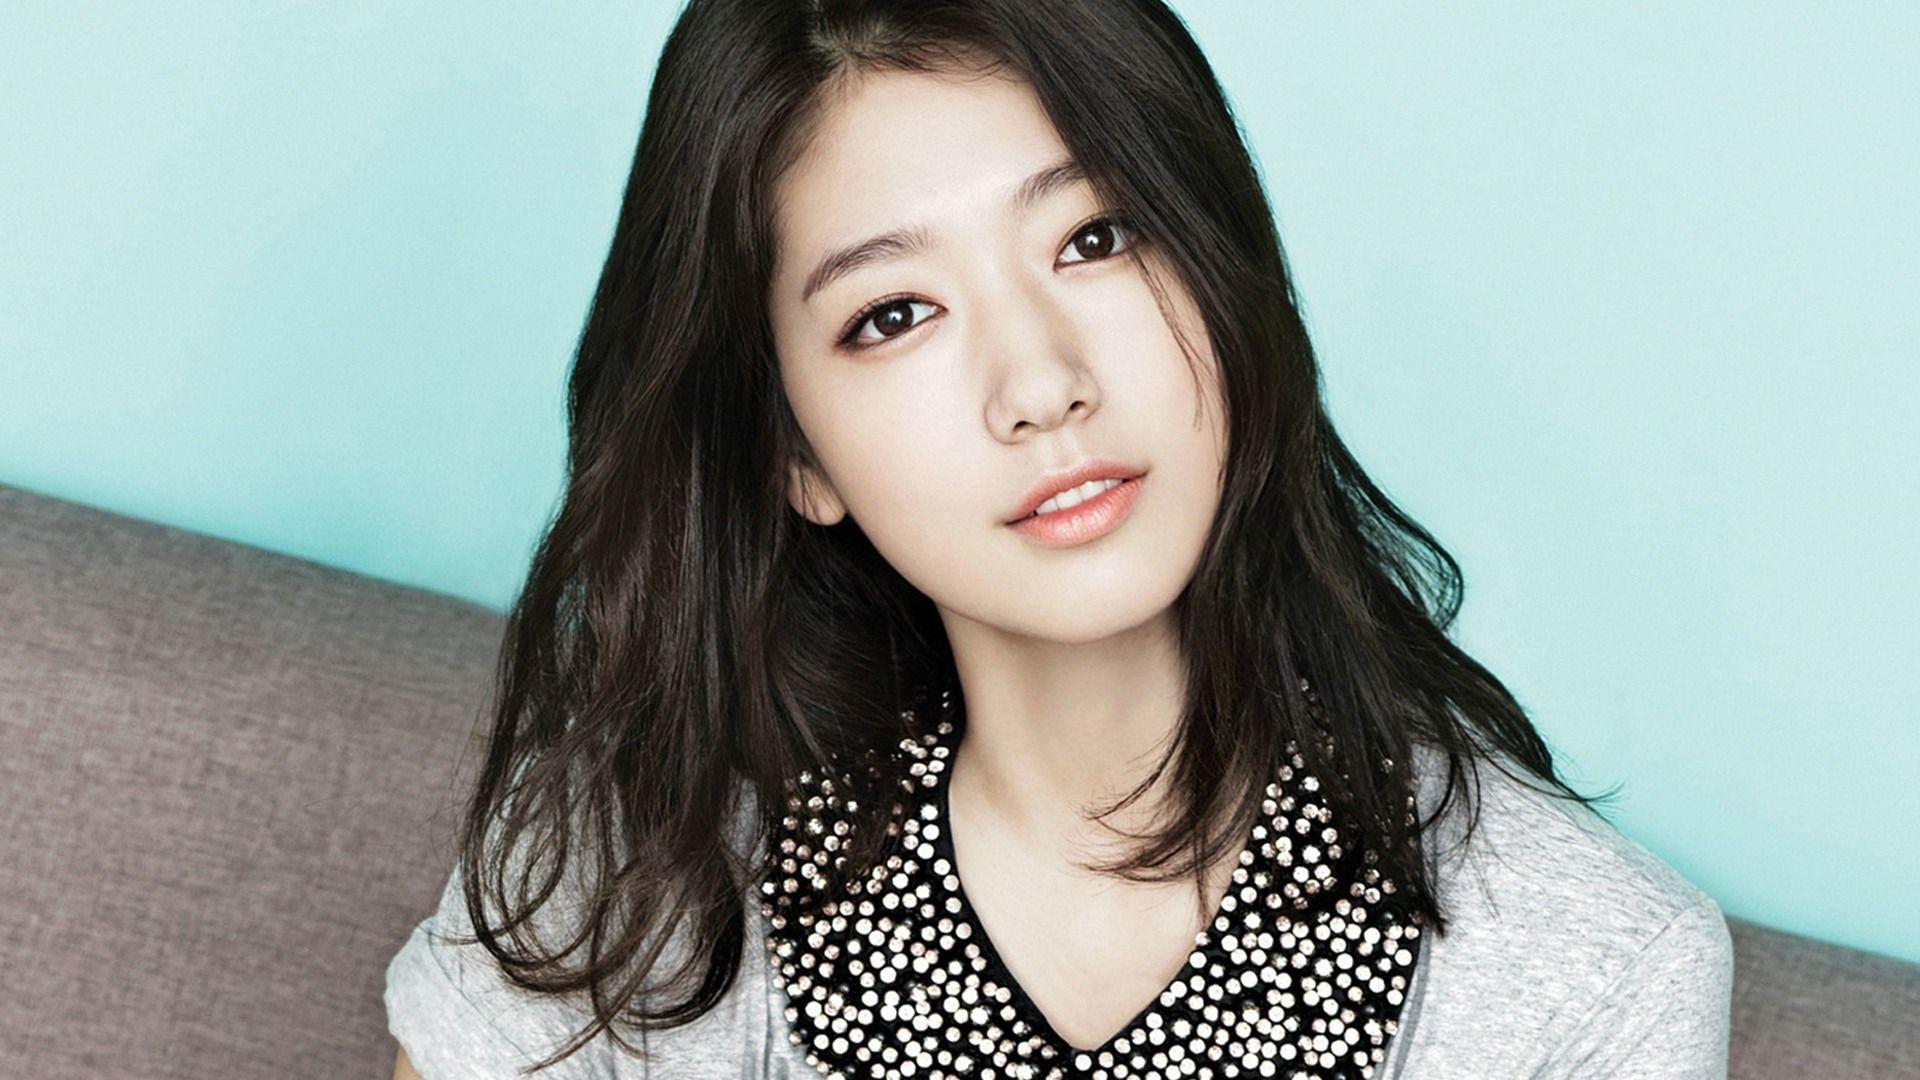 Park Shin Hye Actress Girl Korean Ce... Wallpapers